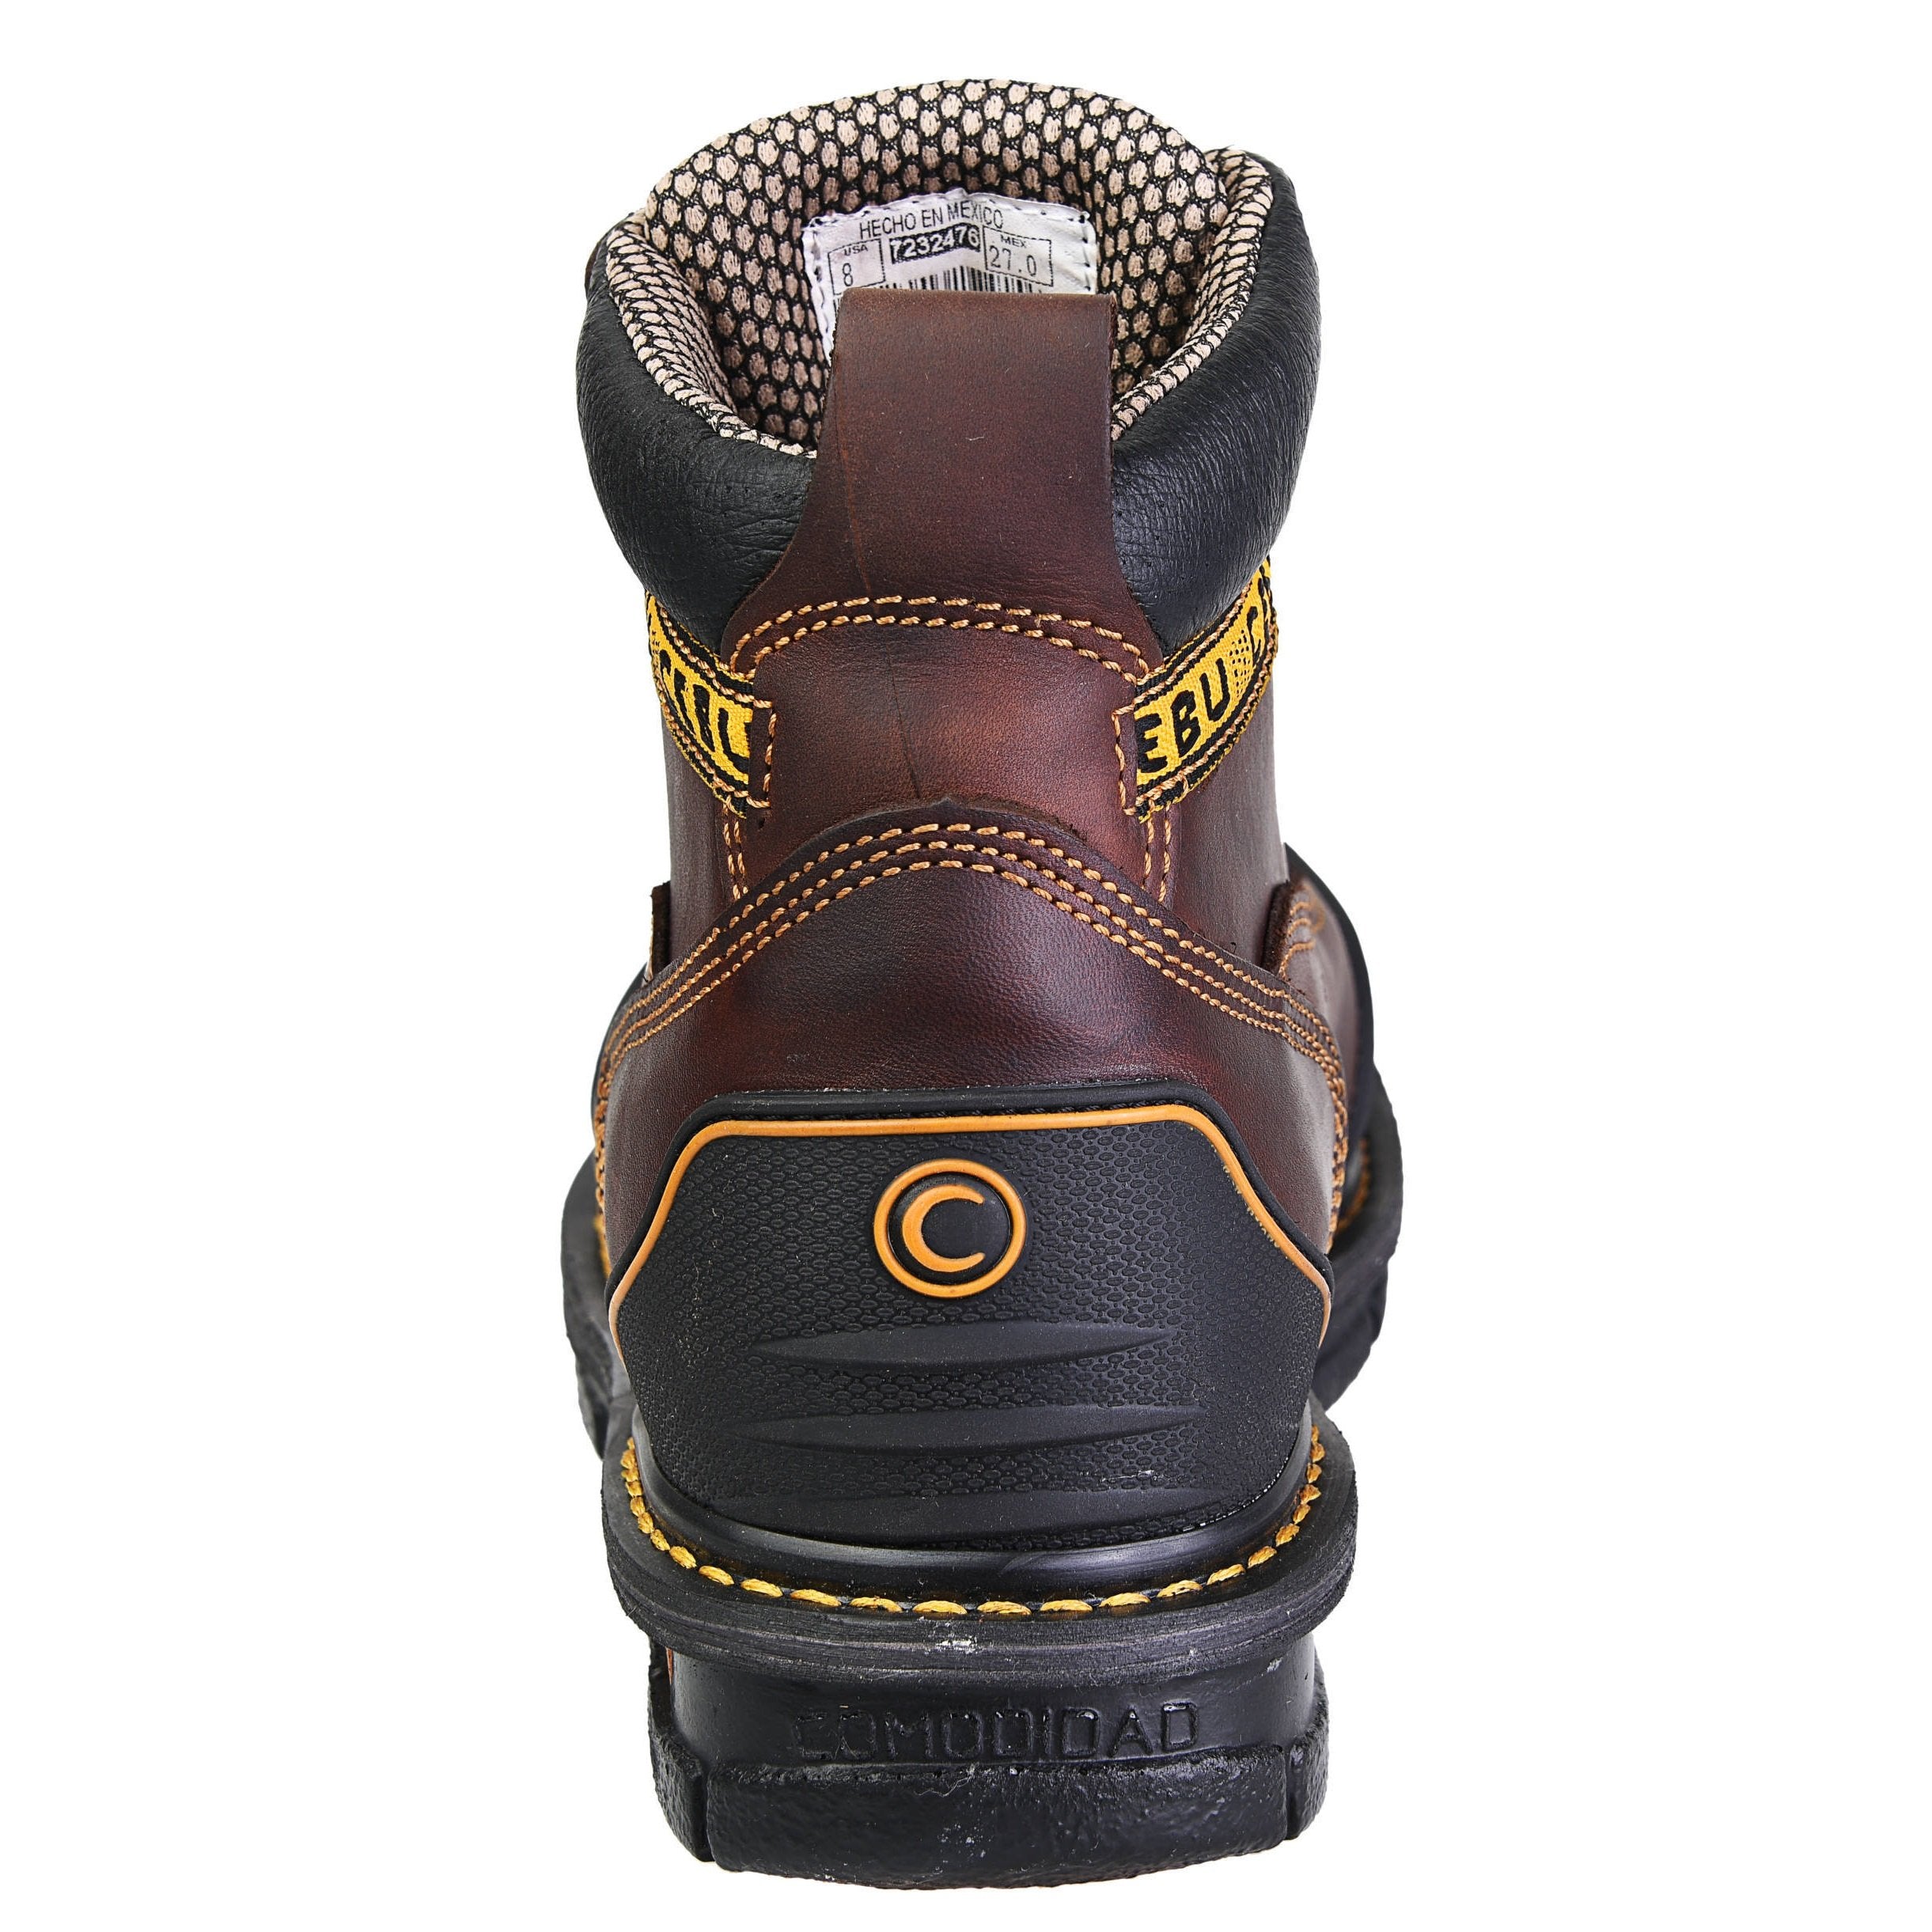 Men's Work Boots - Steel Toe & Rubber Shield - Brown Work Boots - Cebu - 6" Work Boots - Brown 6in Work Boots